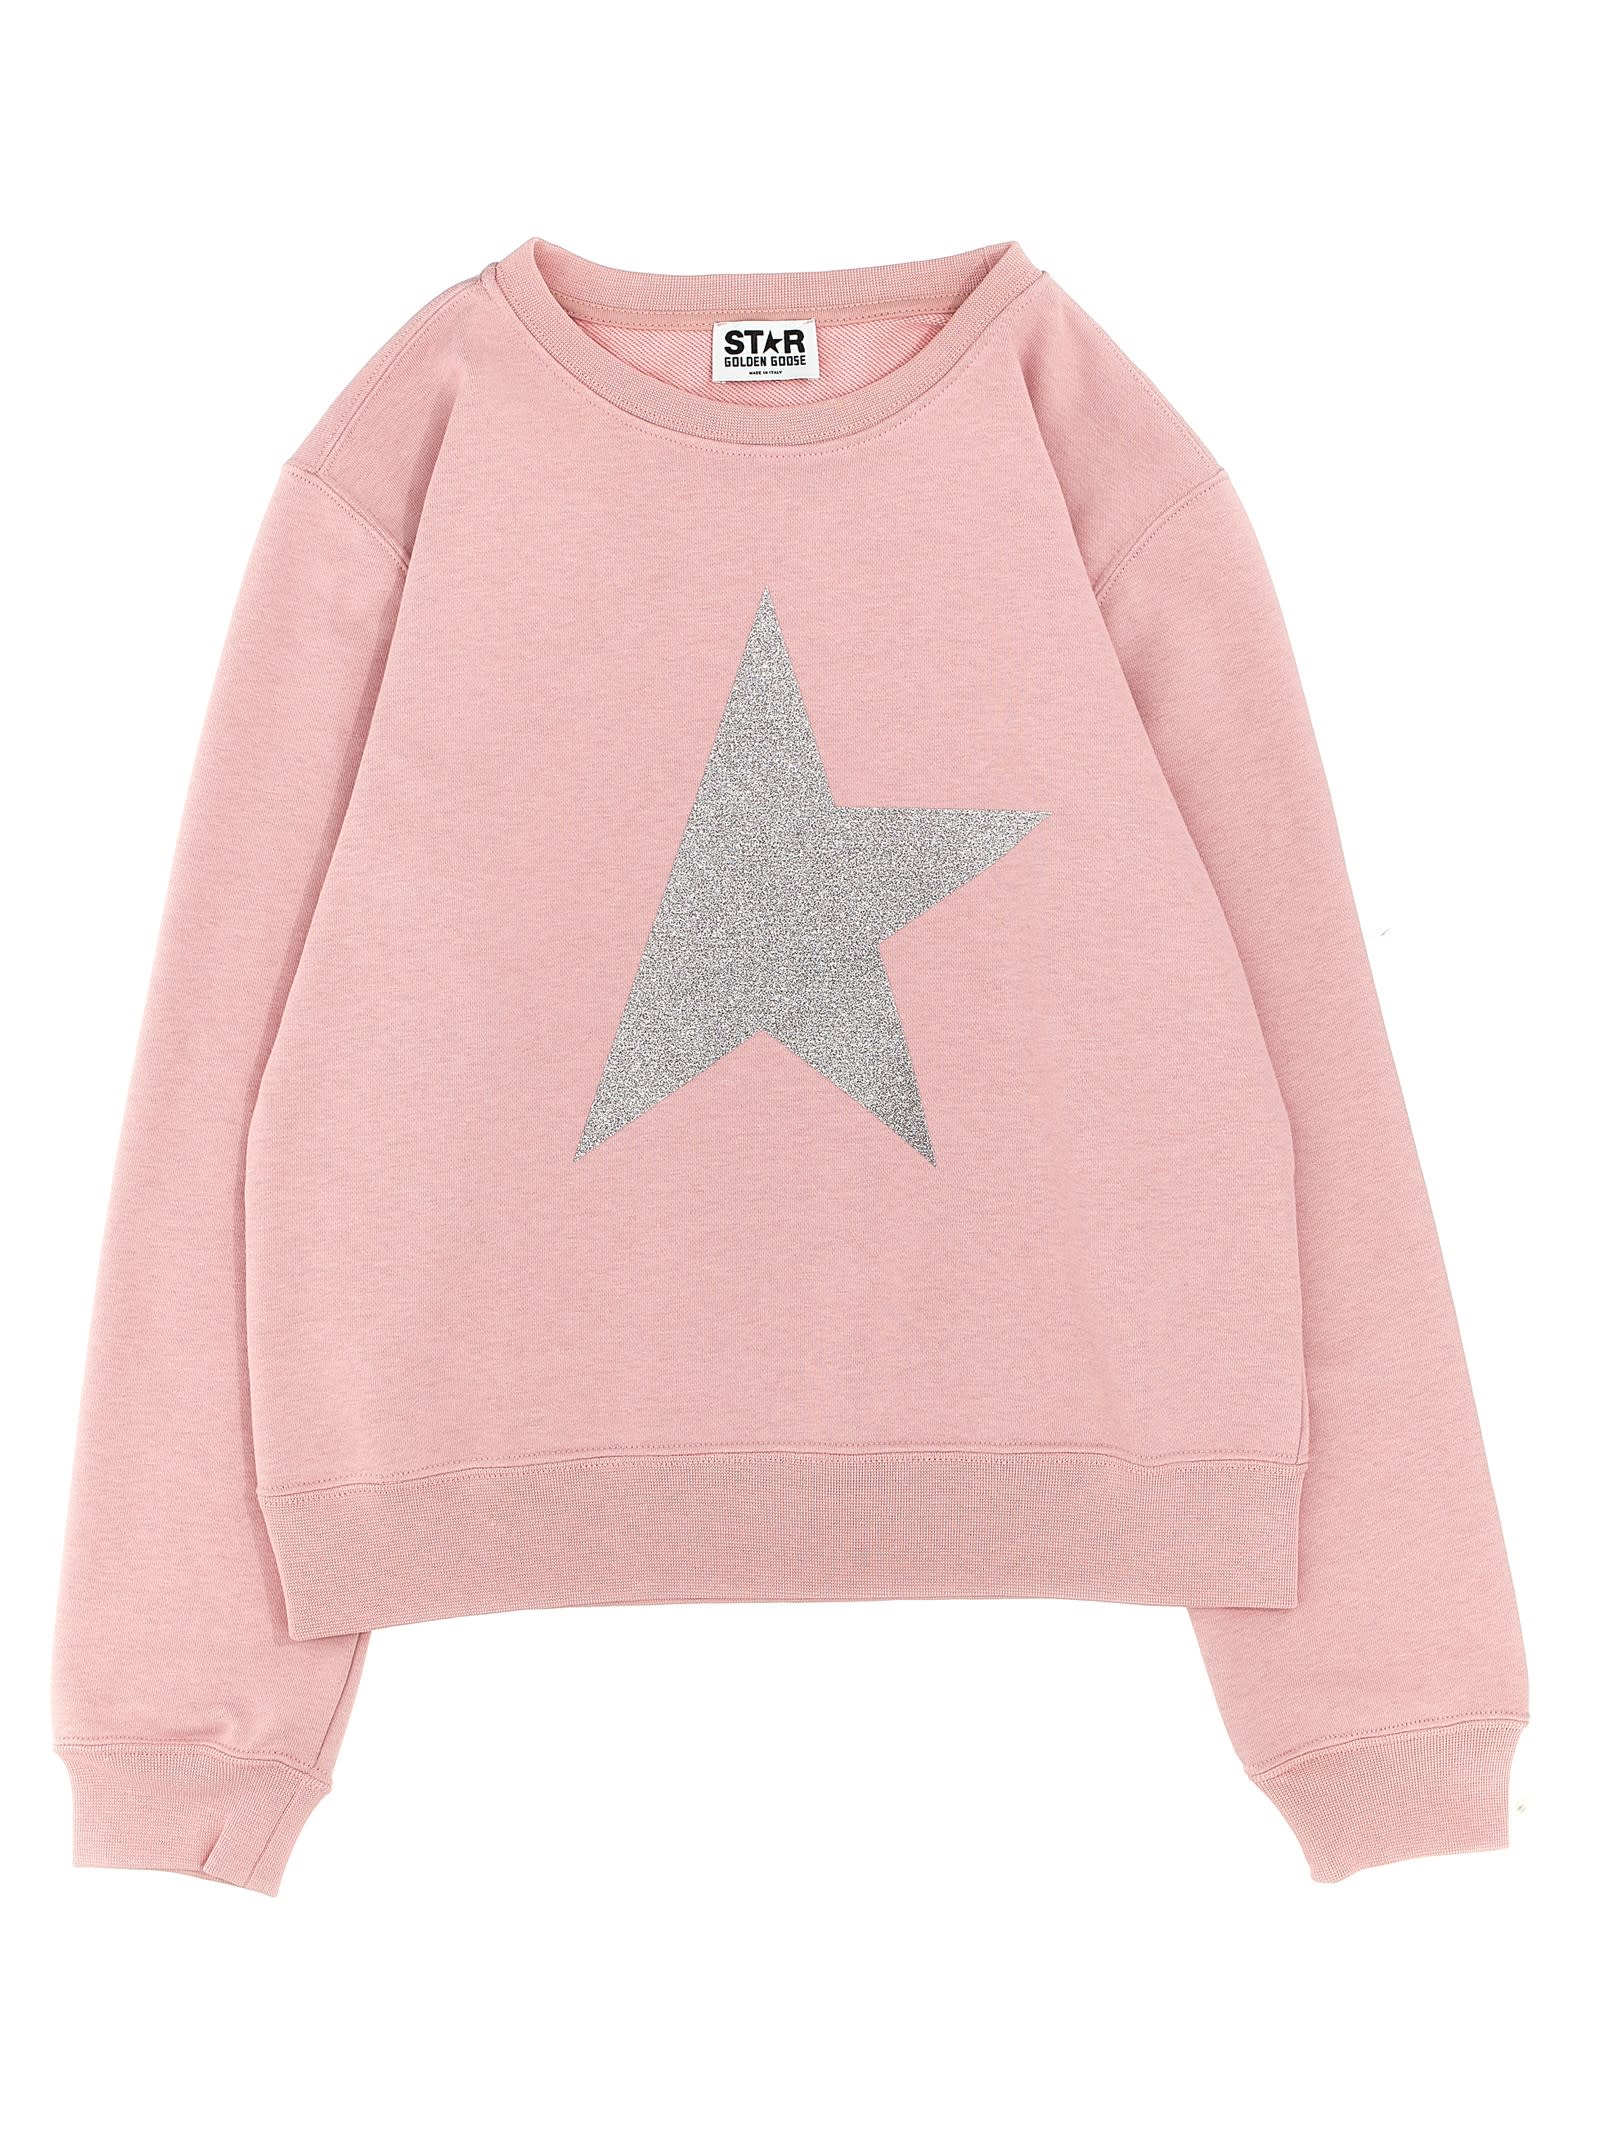 Golden Goose Kids' Star Sweatshirt In Pink